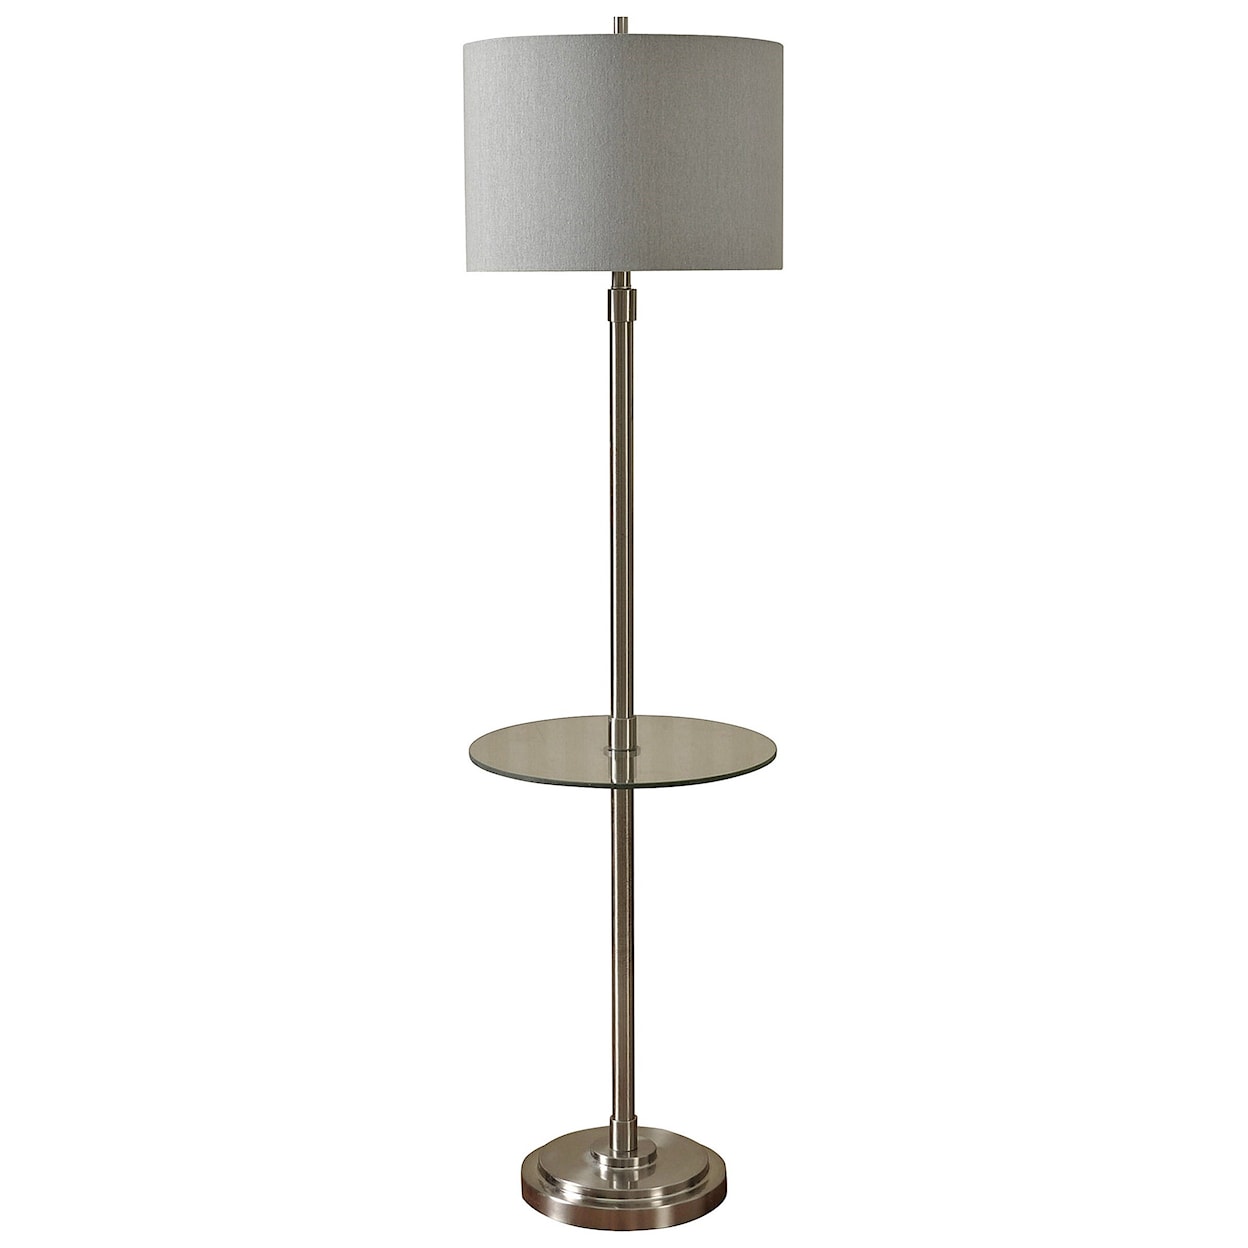 StyleCraft Lamps Brushed Steel Floor Lamp